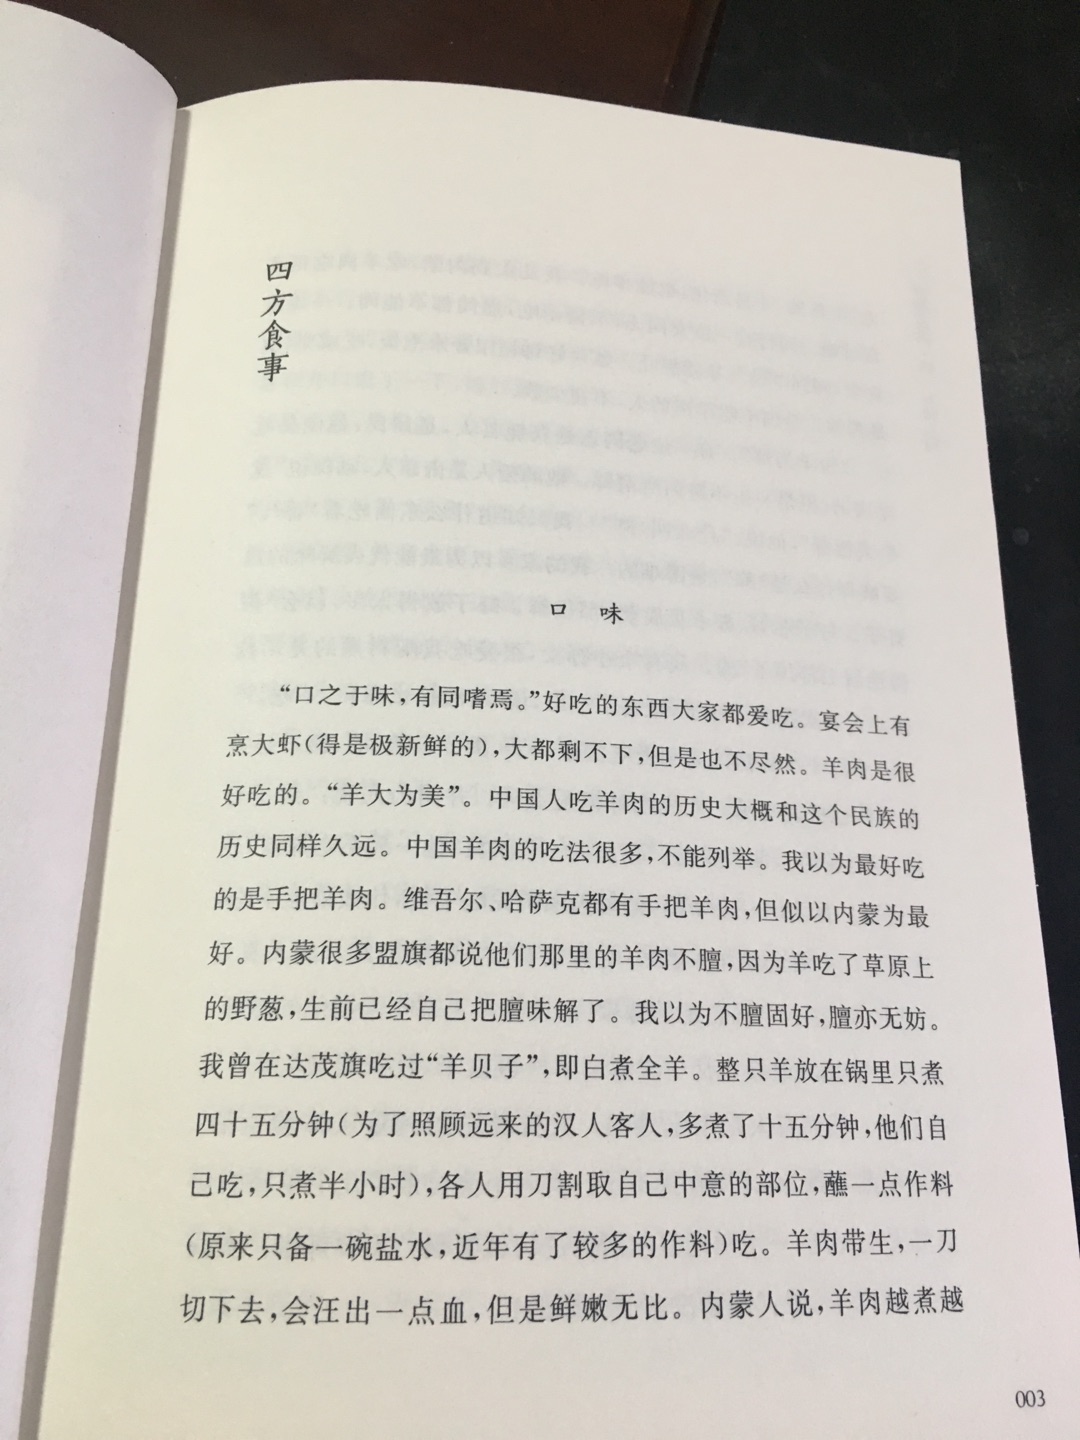 汪曾祺的书主要是谈吃，不是提供菜谱。其实人从吃中体现许多。民以食为天不假。